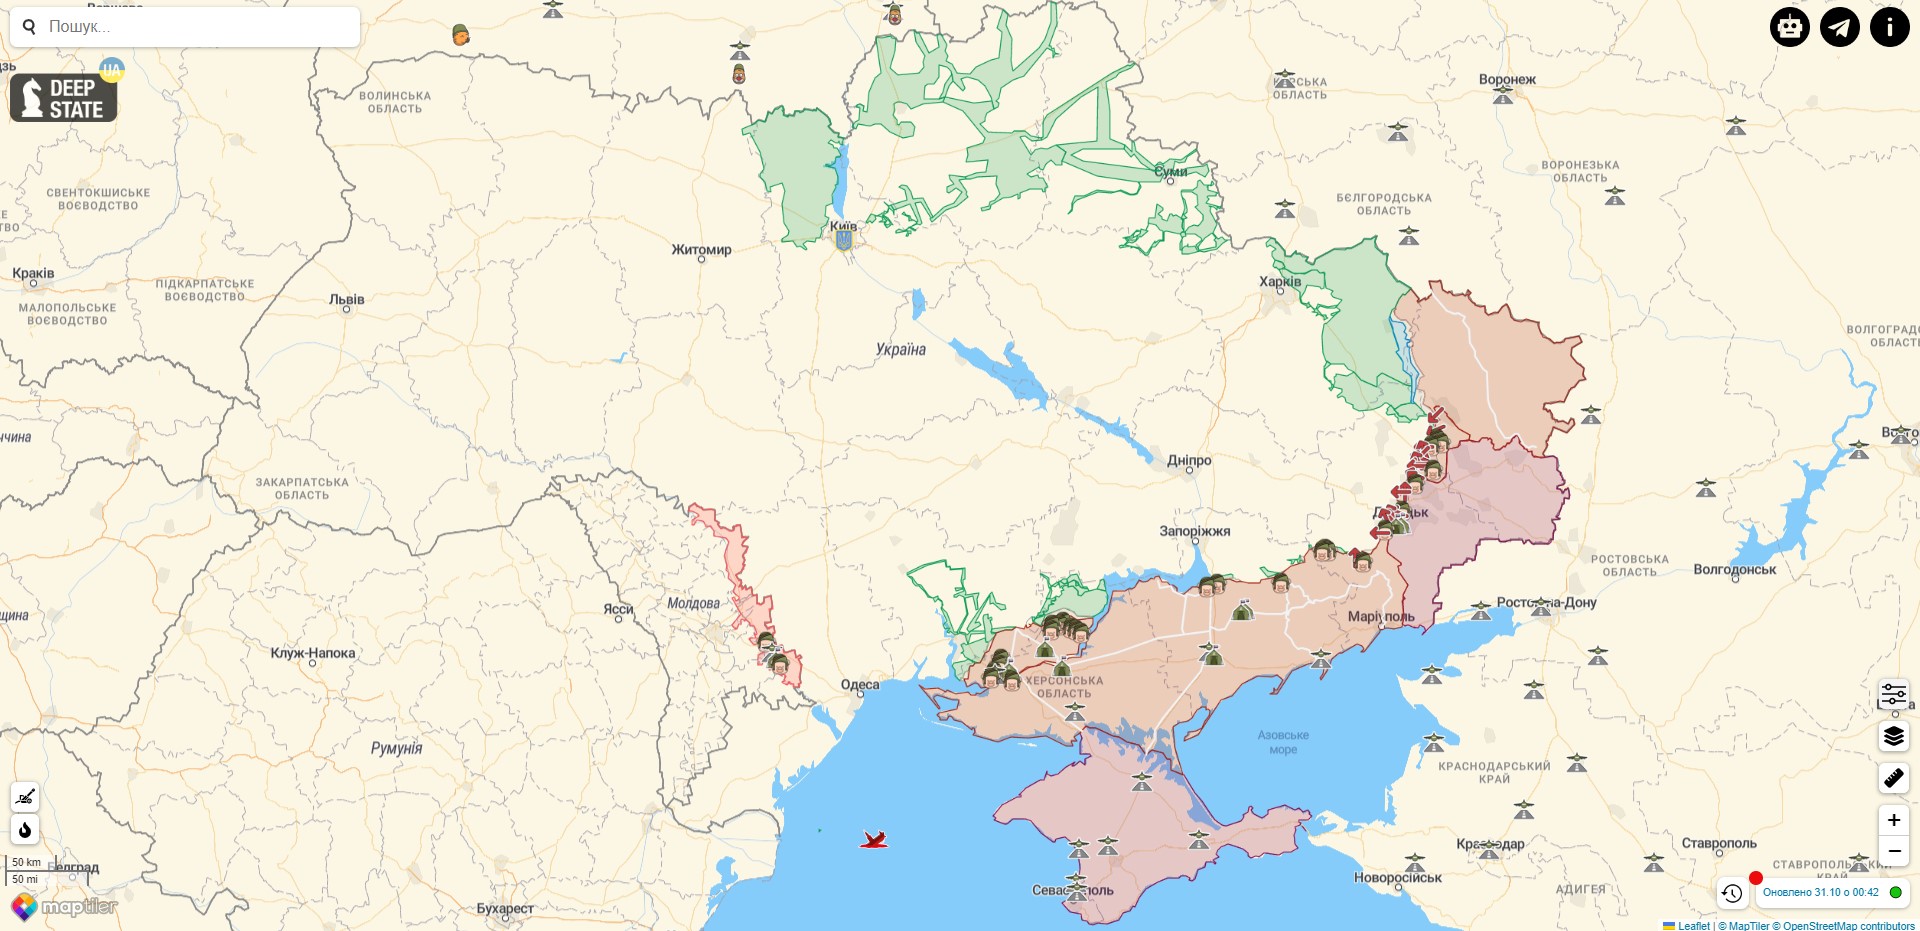 Боевые действия против РФ на территории Украины на 31 октября